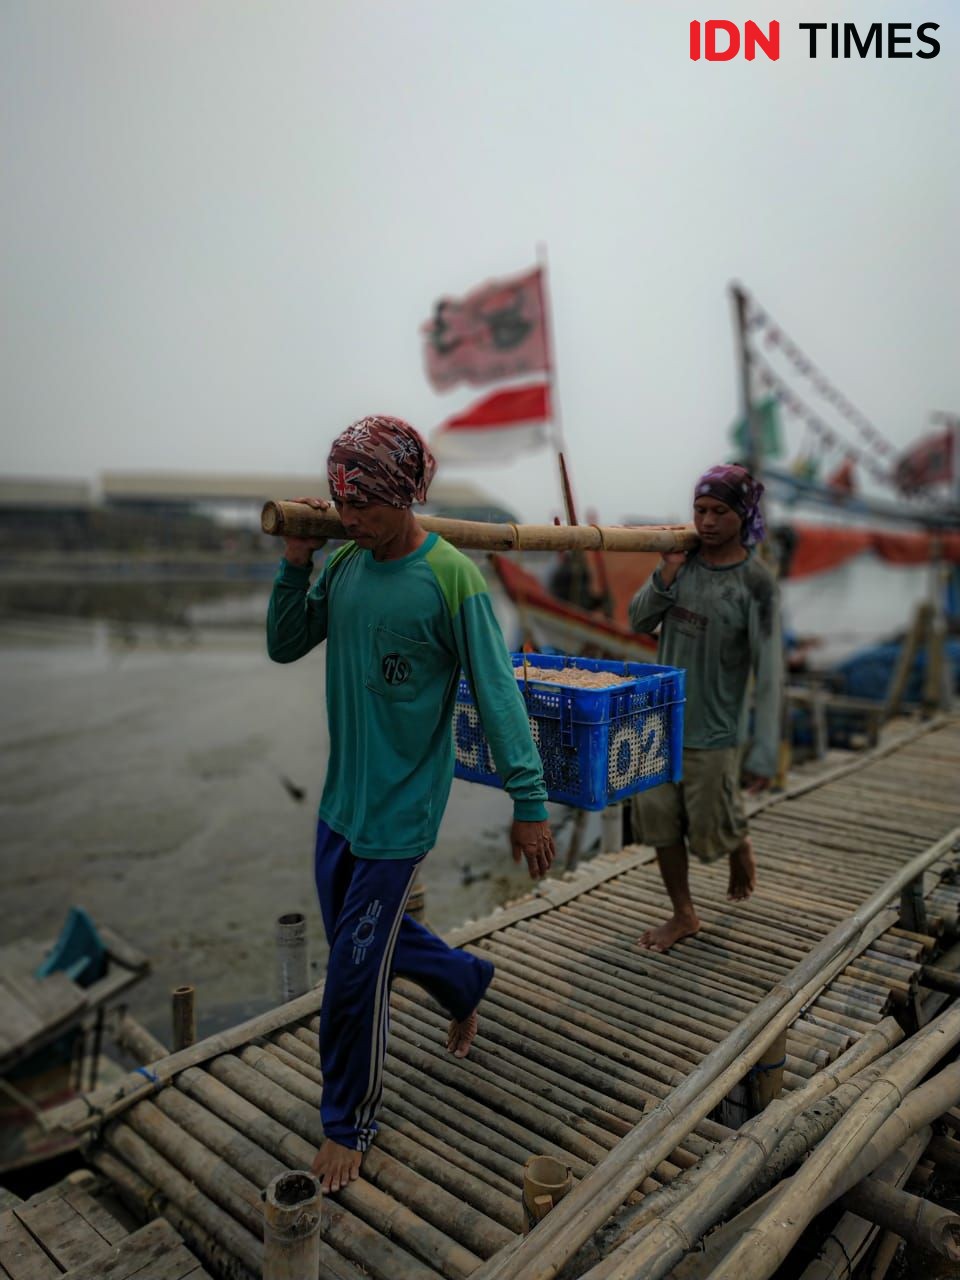 Peringati HUT RI, Nelayan Kibarkan Merah Putih di Laut Jawa